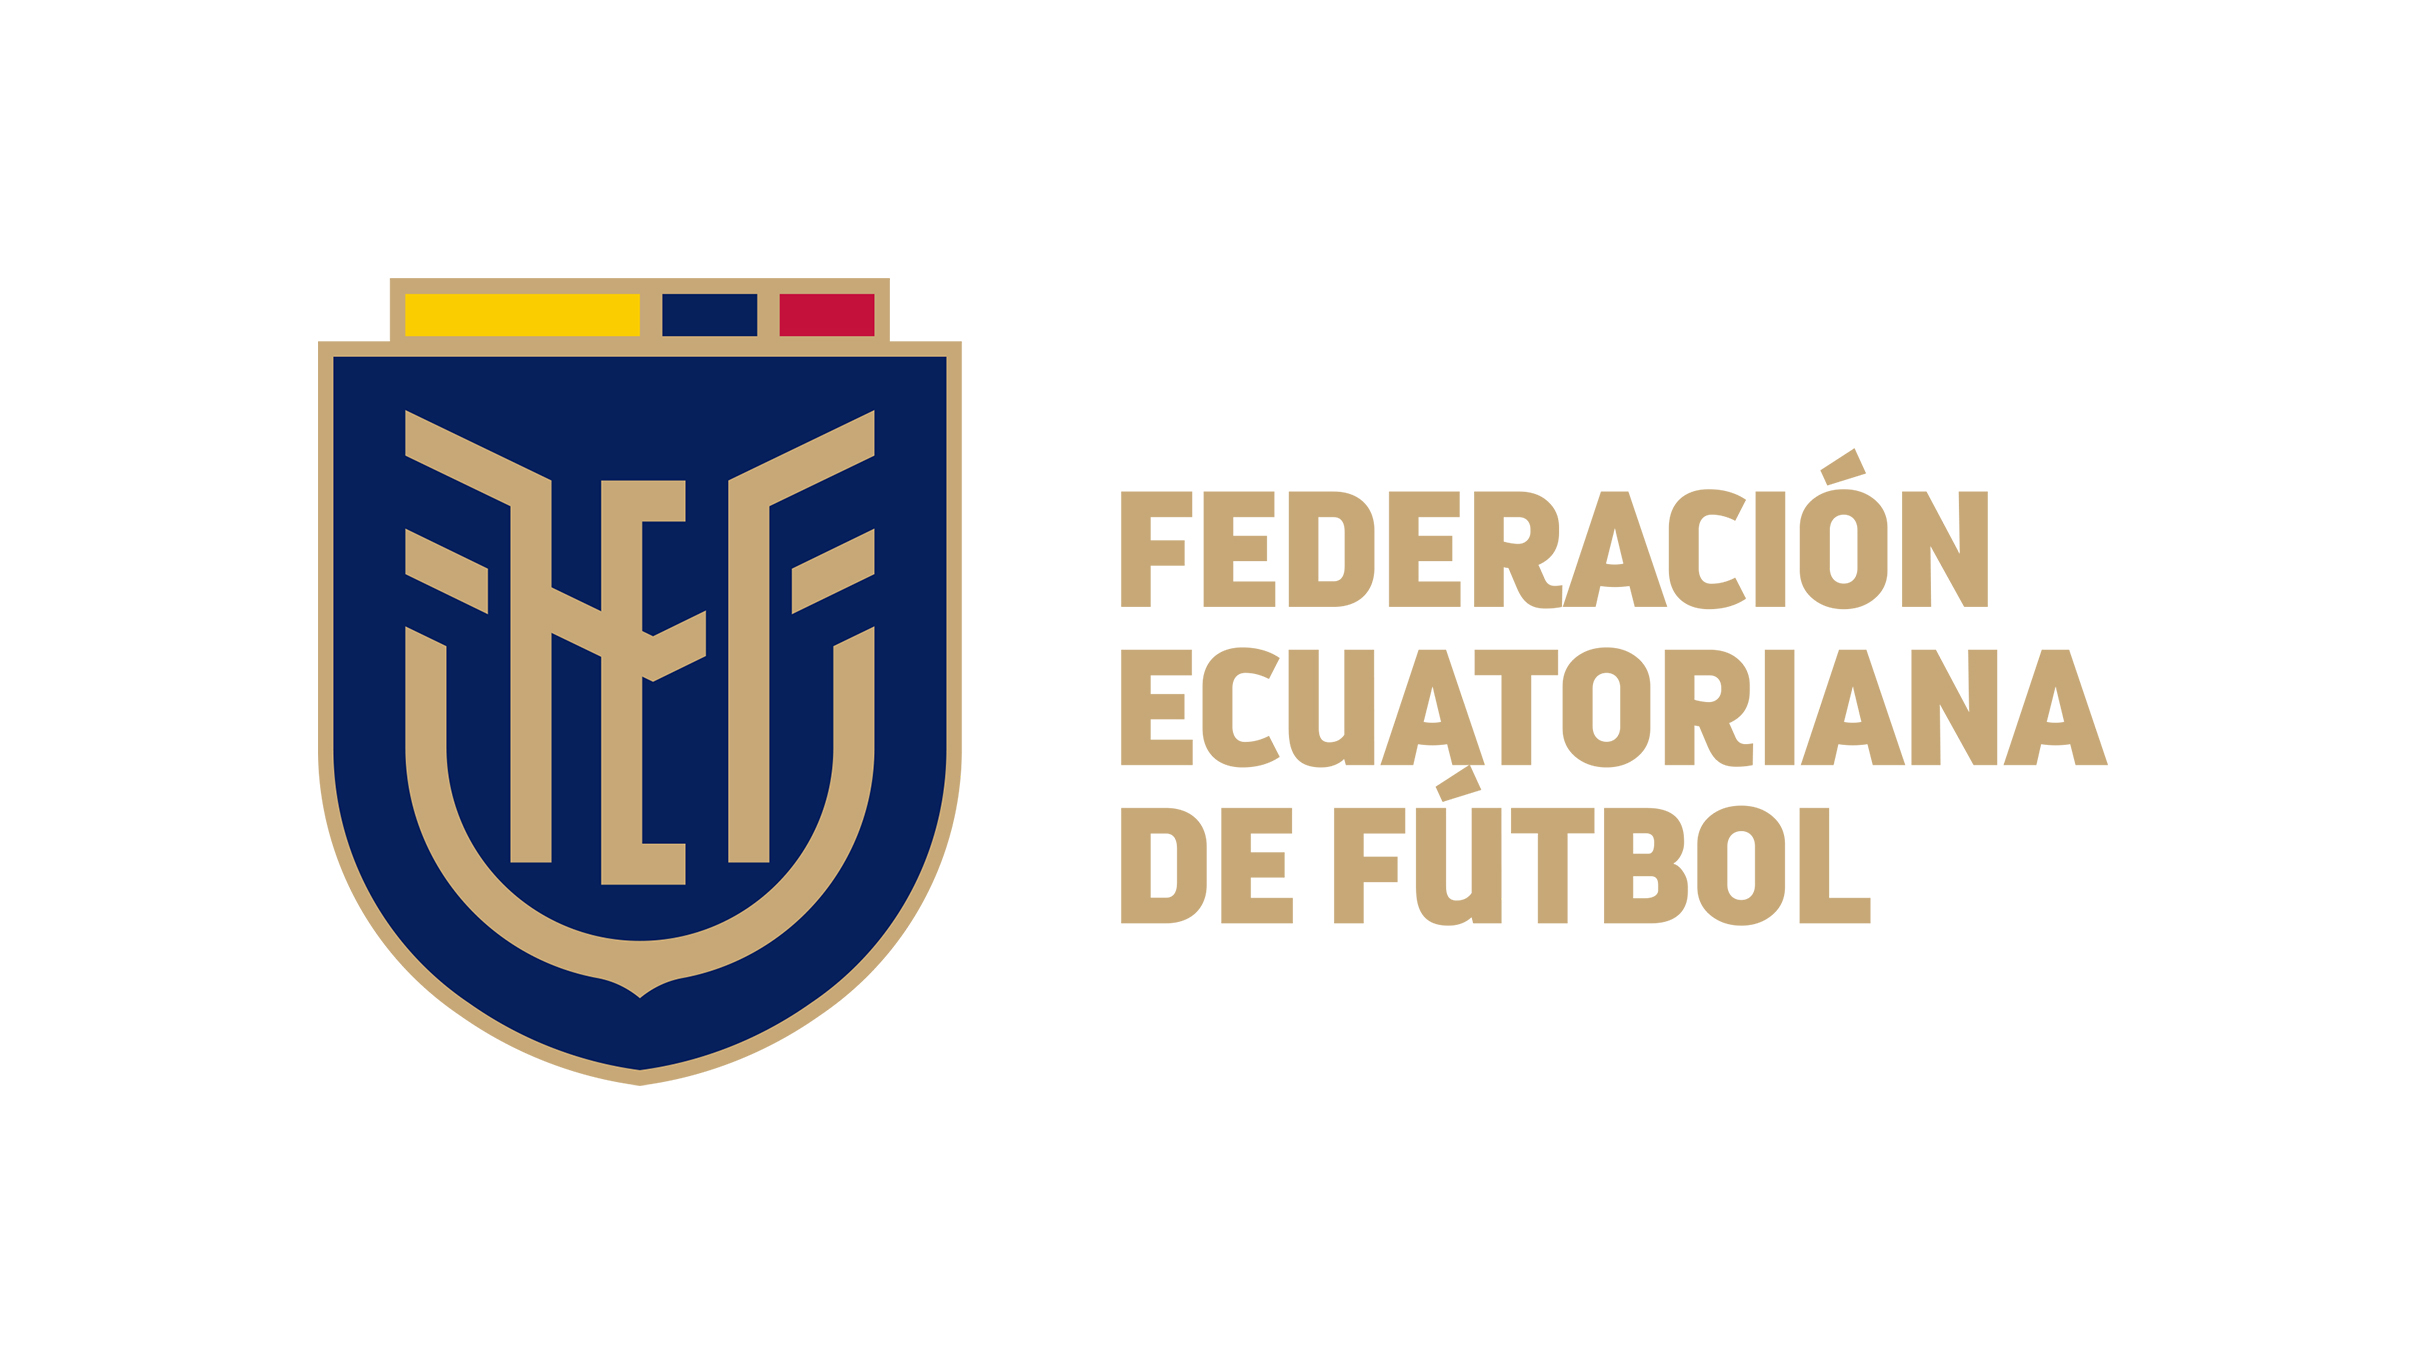 Ecuador National Football Team